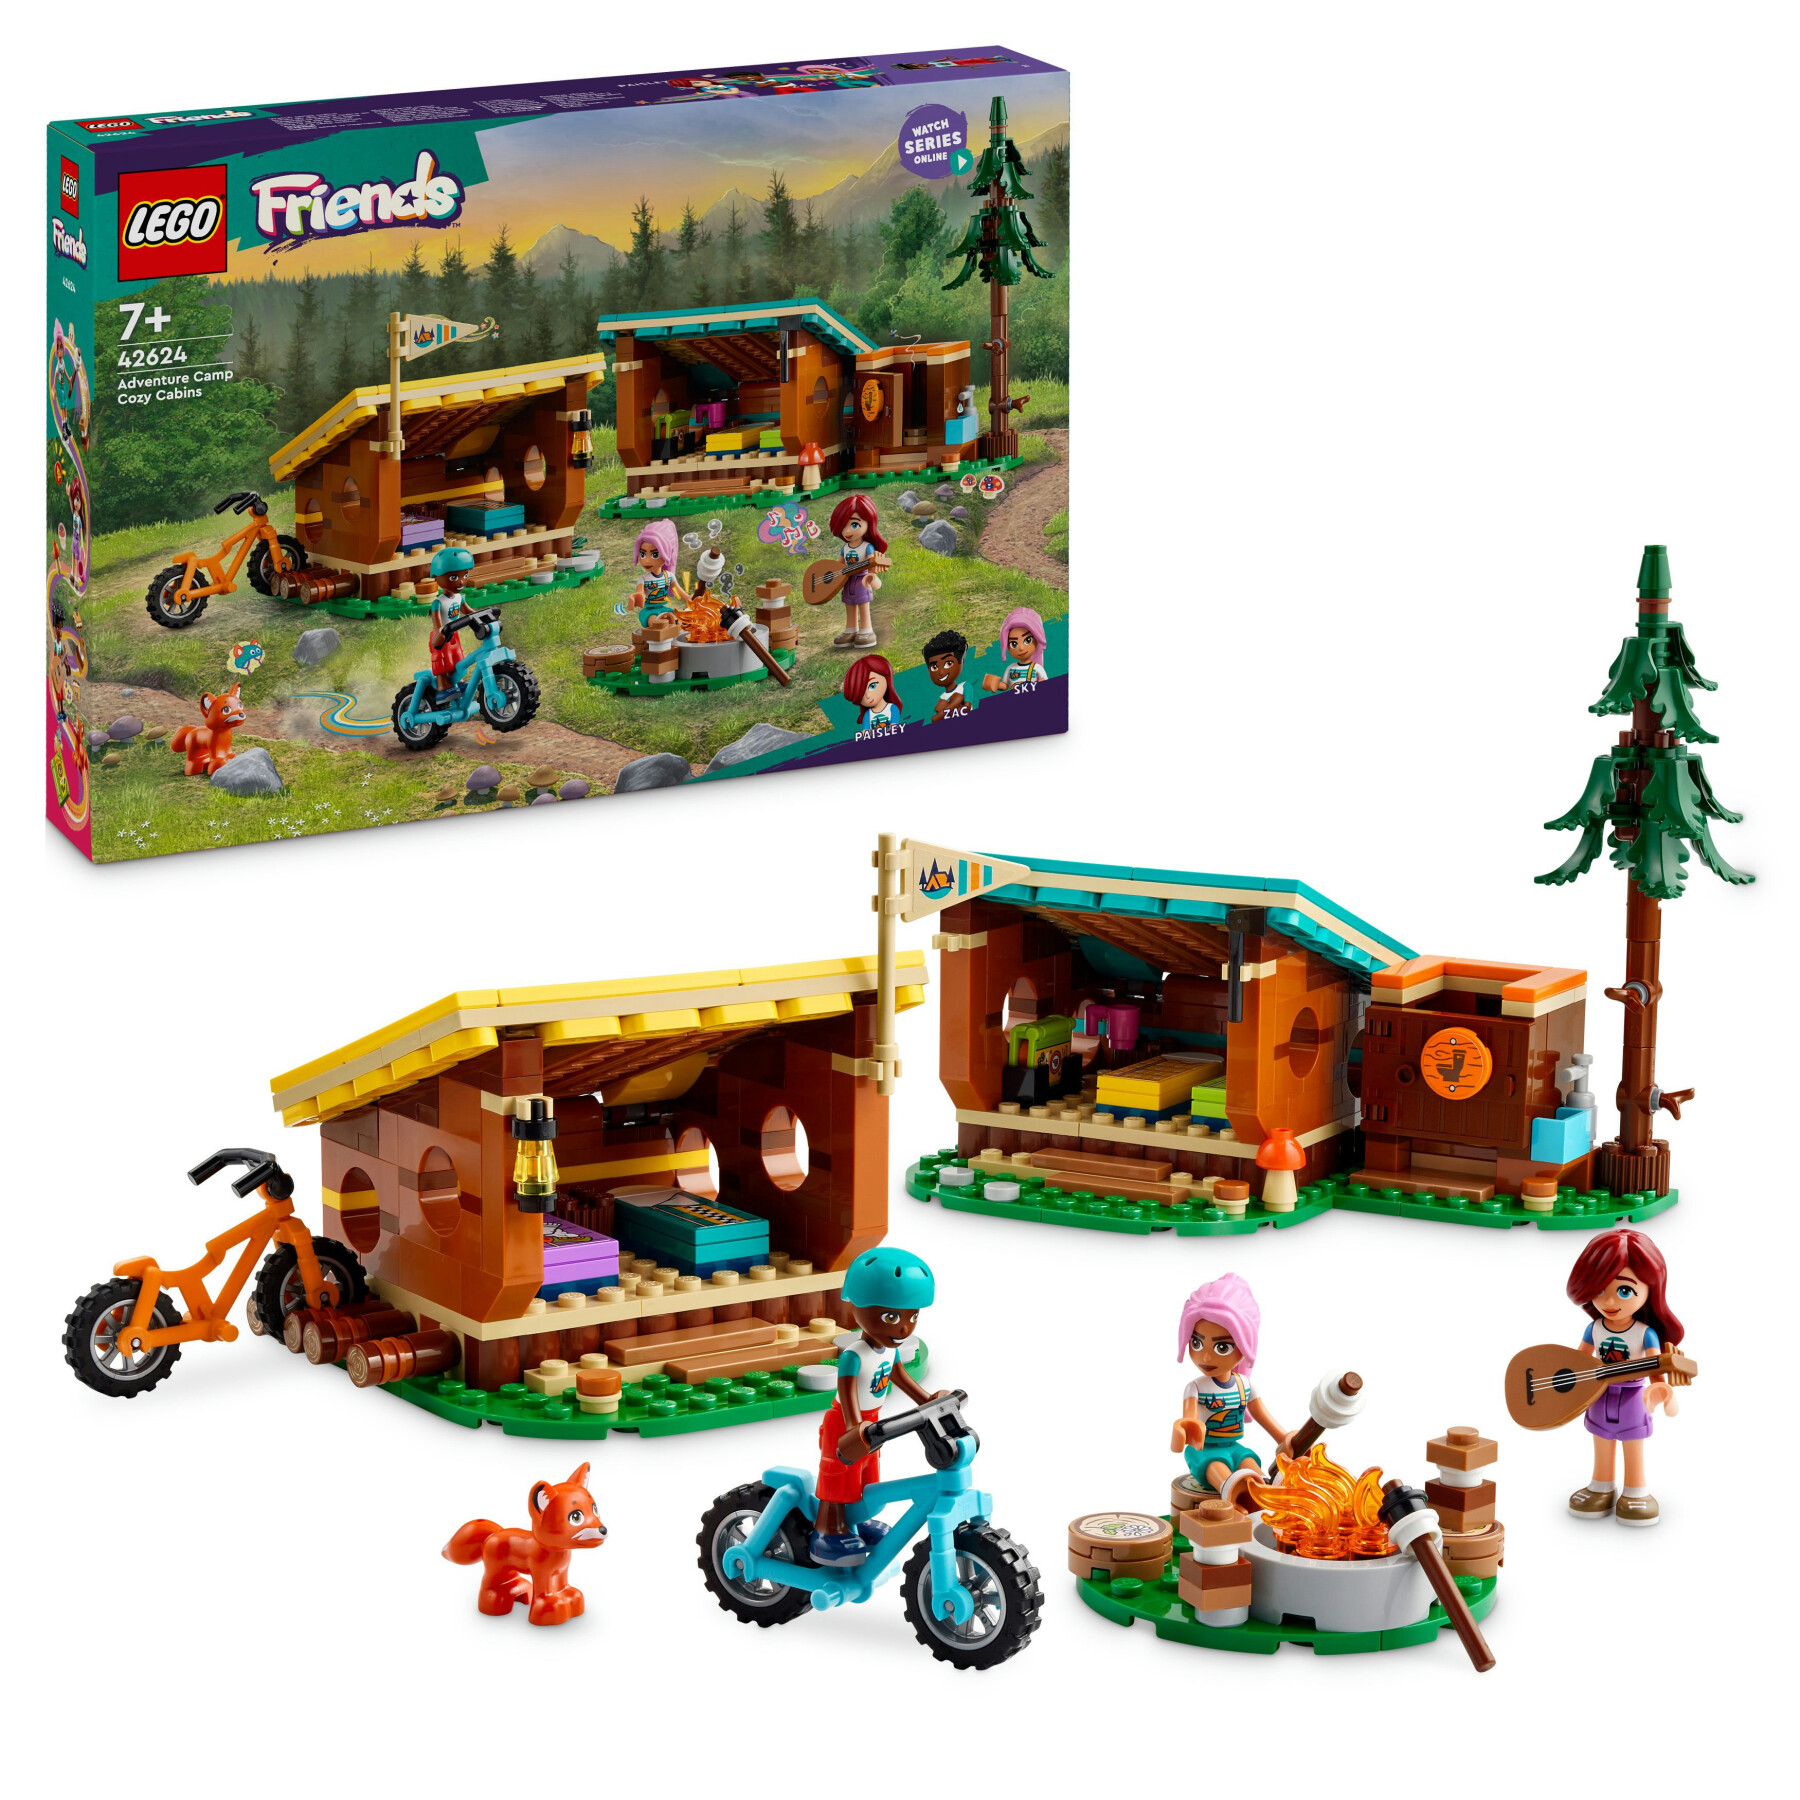 Lego friends 42624 cabine relax al campo avventure, giochi educativi per bambini 7+ anni, campeggio giocattolo da costruire - LEGO FRIENDS